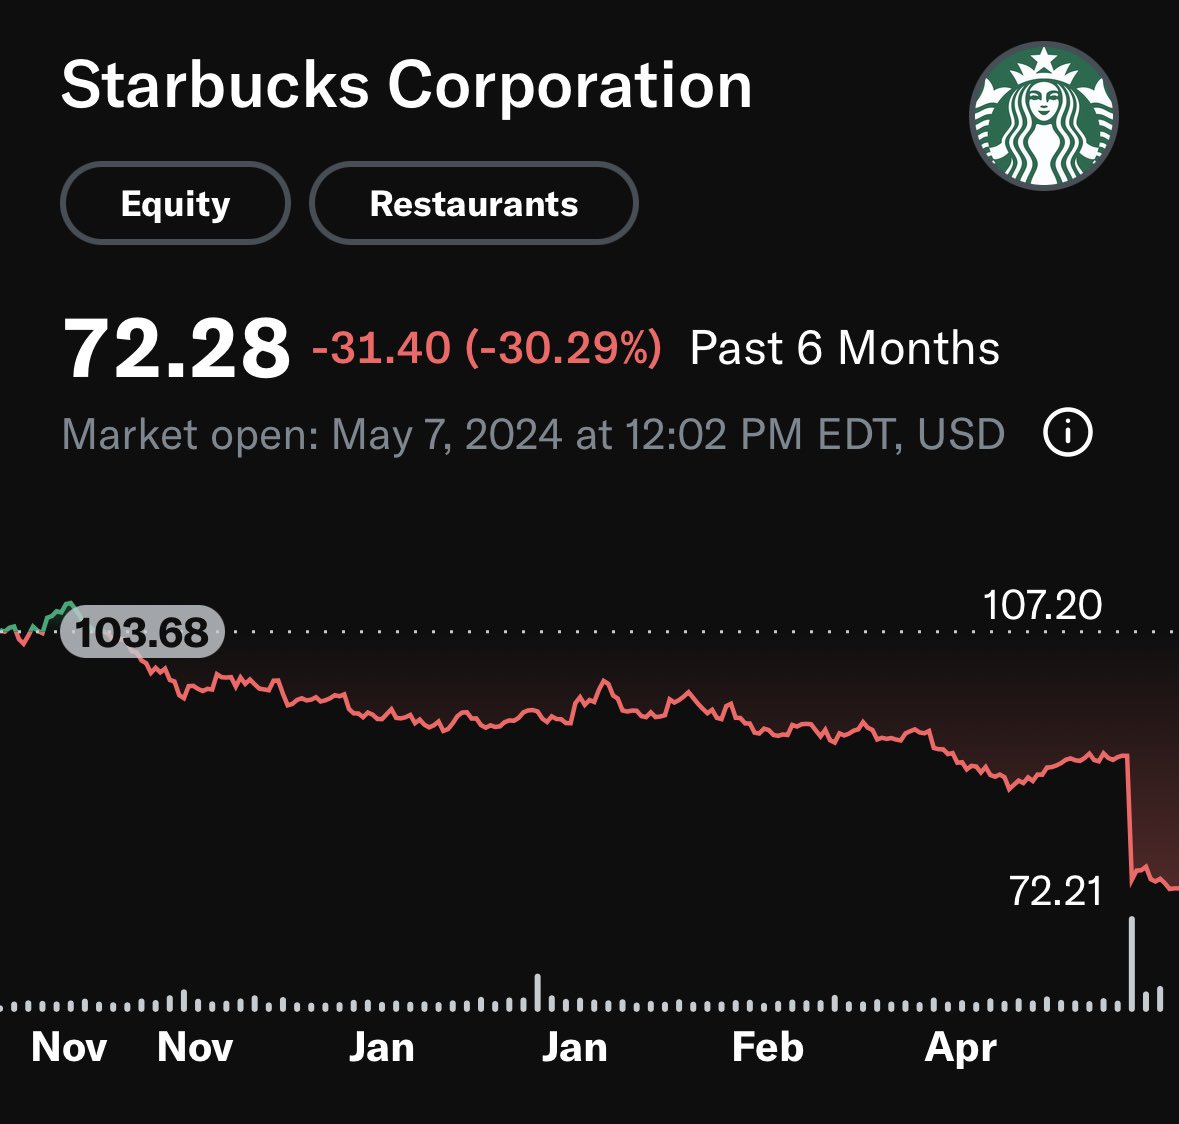 แบรนด์ Starbucks กำลังเจอทะเลเลือด ร้านกาแฟ กำลังมีปัญหา ถ้าใครคิดว่าร้านกาแฟ Starbucks ดูดี แต่ราคาหุ้นกลับตรงกันข้าม Starbucks ประสบปัญหาด้านยอดขาย และการแข่งขันที่รุนแรงในหลายประเทศ มีแบรนด์กาแฟและคาเฟ่ท้องถิ่นเกิดขึ้นมากมาย ประเทศไทยเองก็เช่นกัน #ลงทุนแมน